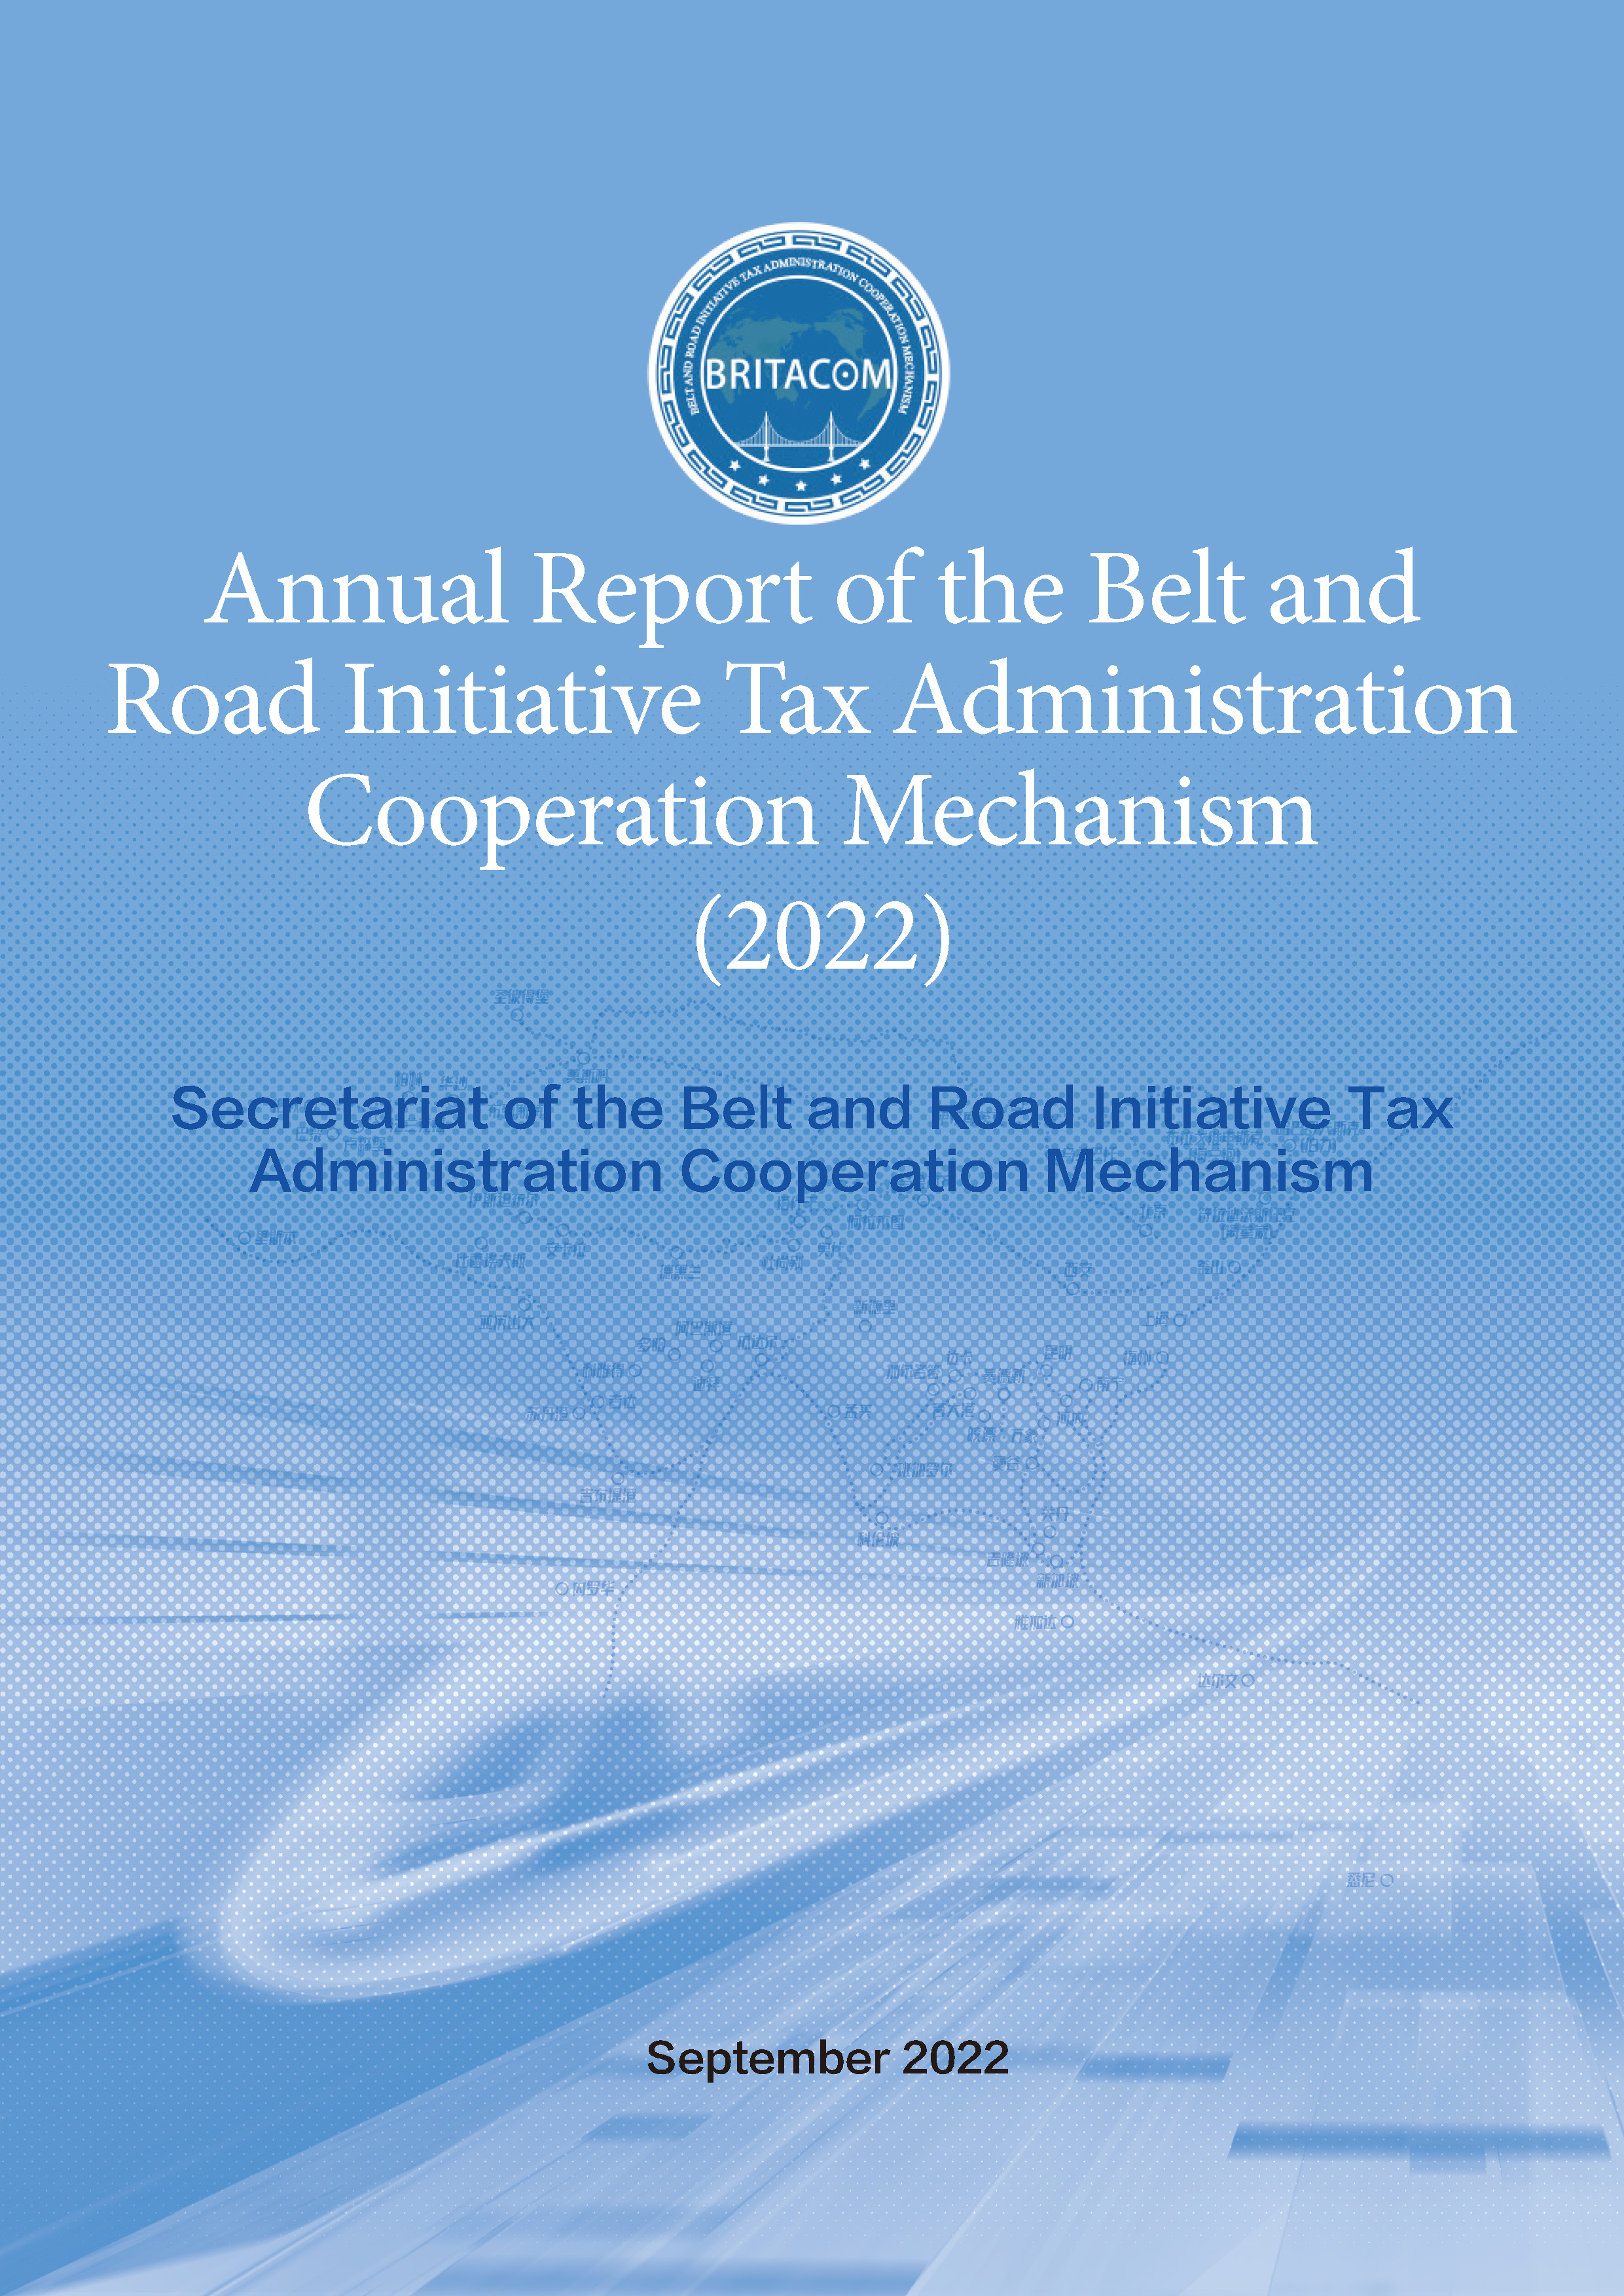 页面提取自－Annual Report of the Belt and Road Initiative Tax Administration Cooperation Mechanism (2022).jpg